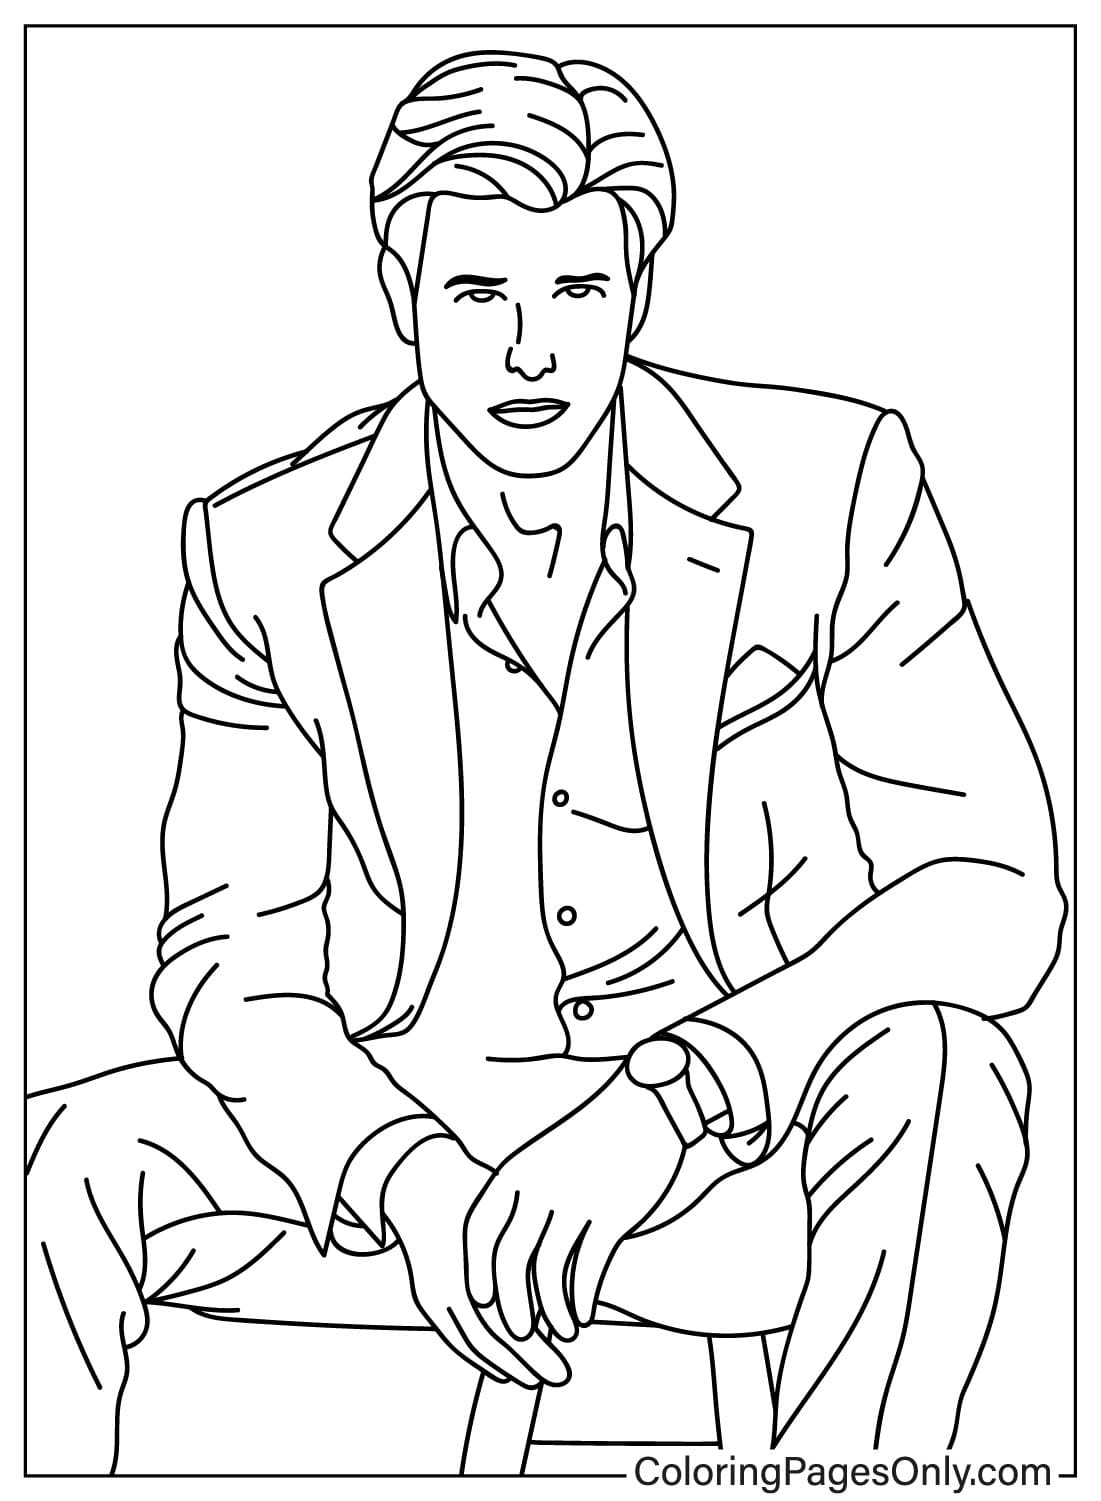 Página para colorear de Tom Cruise gratis de Tom Cruise